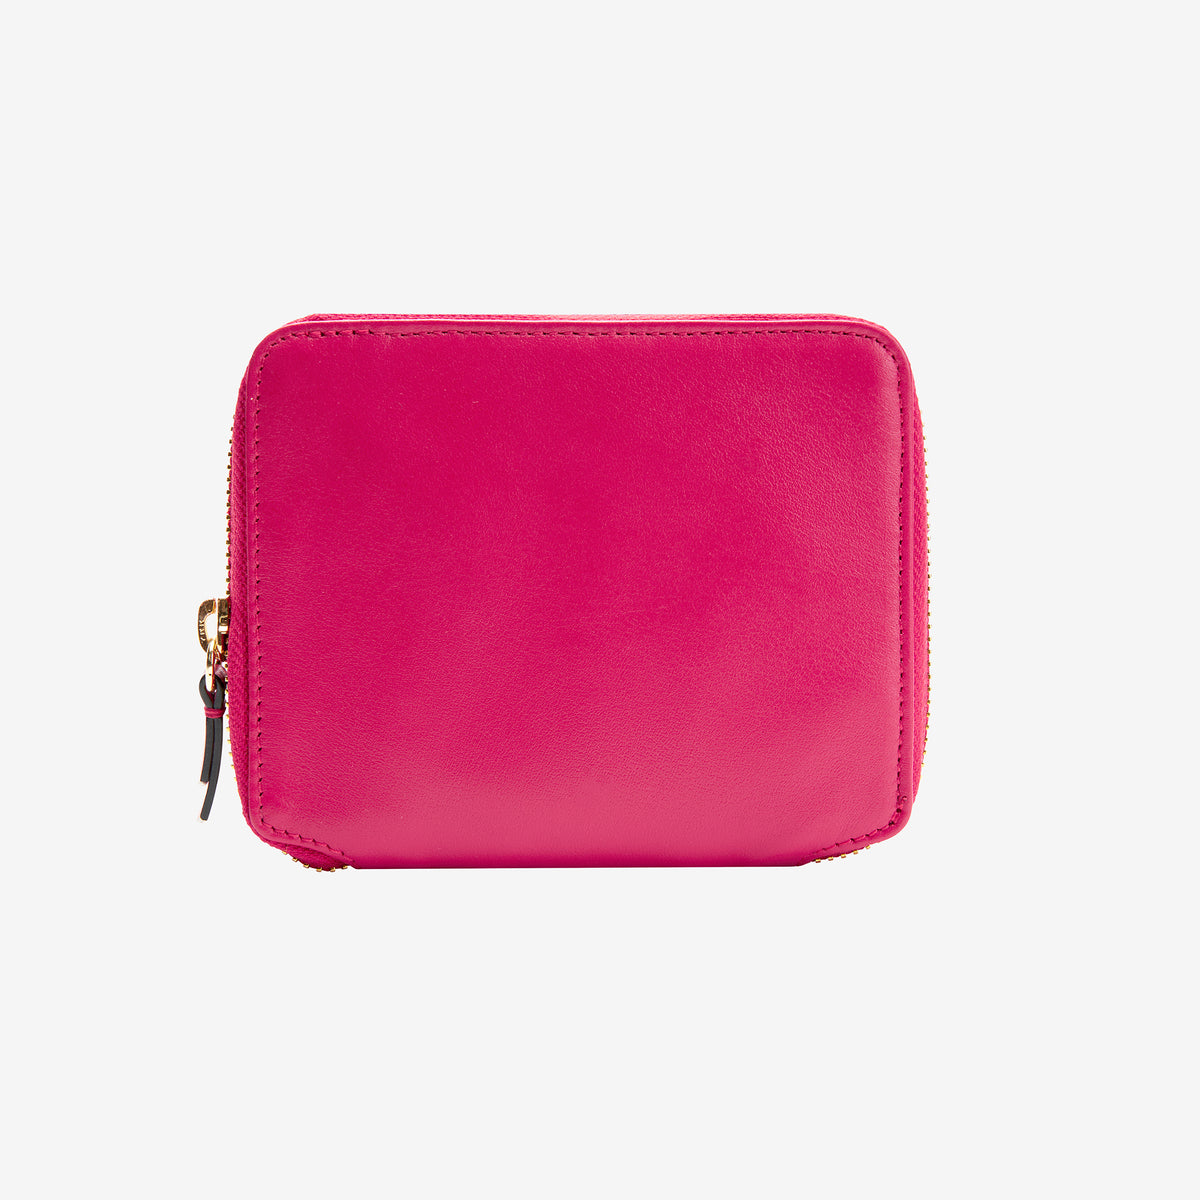 Buy Lavie Women's Quilt Eden Zip Around Wallet Lt Pink Ladies Purse Handbag  at Amazon.in